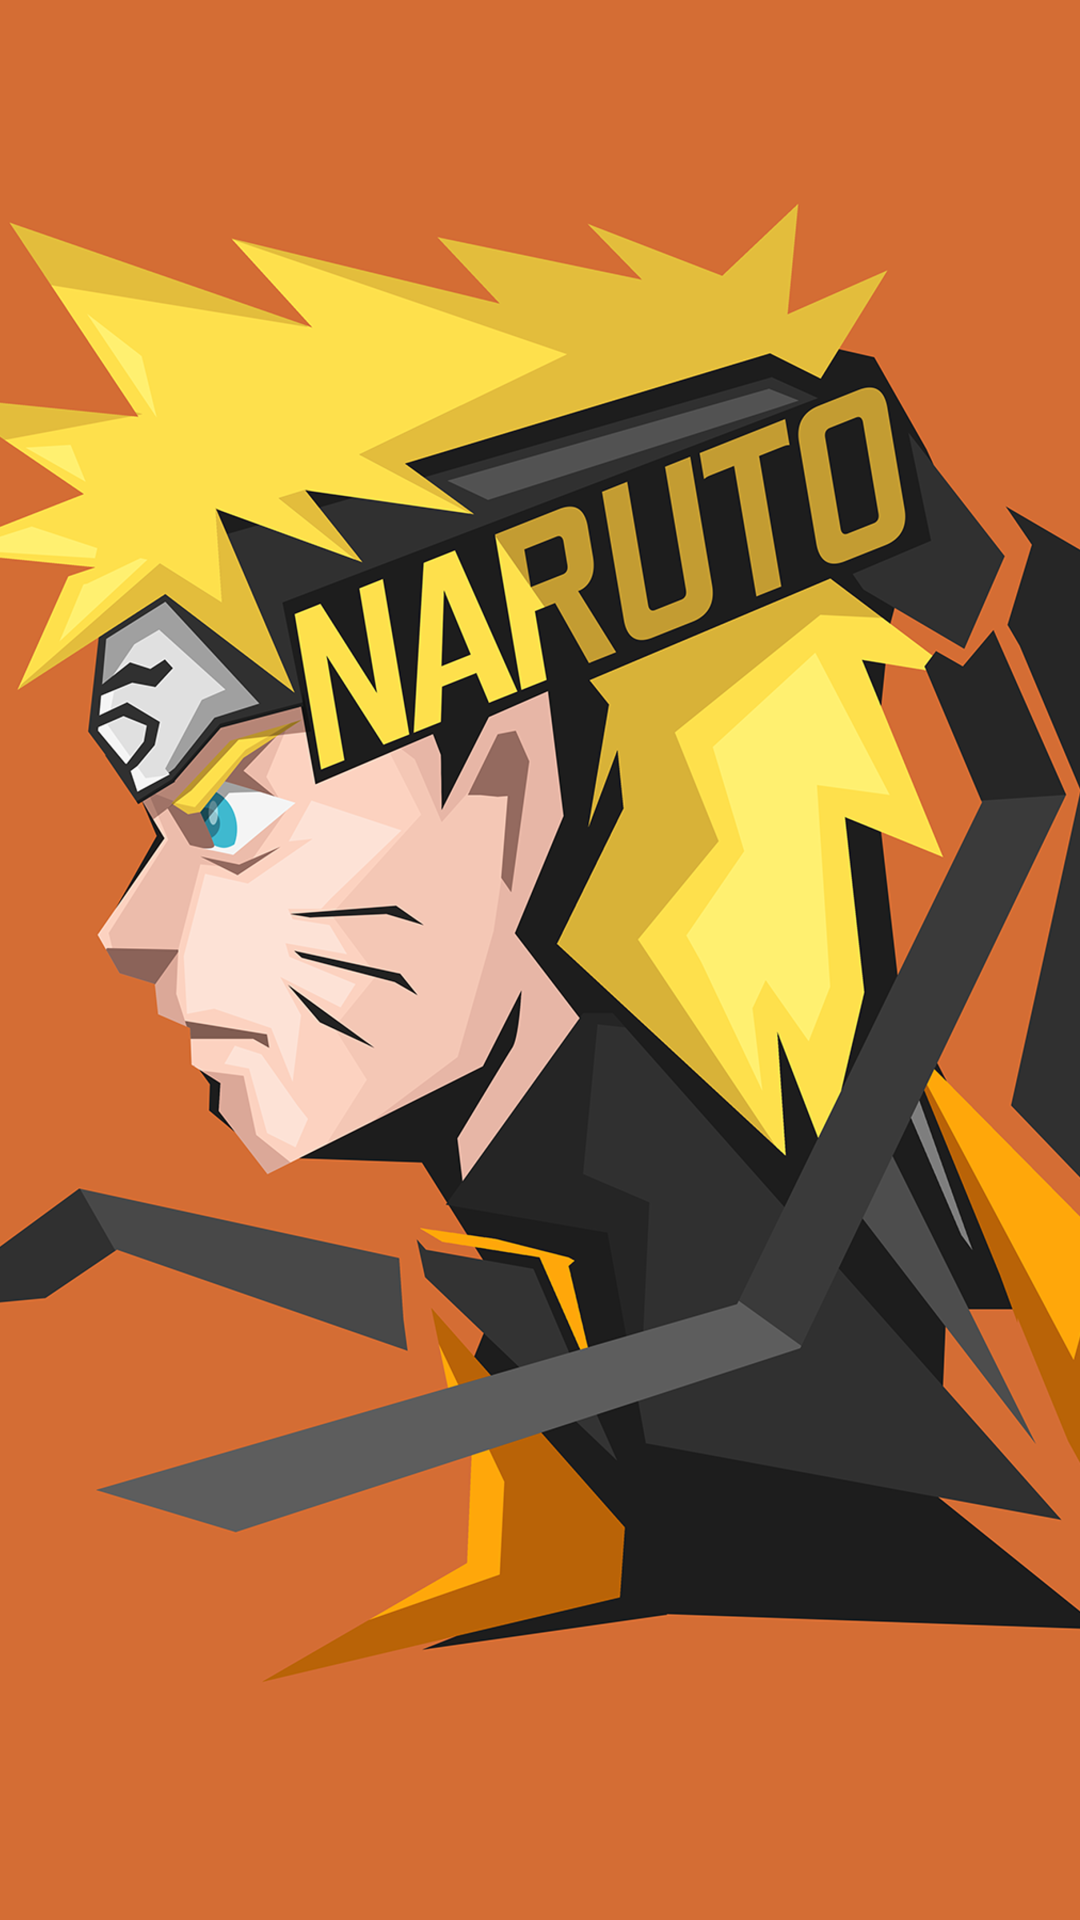 Với những fan Naruto yêu thích Naruto Uzumaki, không thể bỏ qua bức ảnh nền điện thoại đẹp và độc đáo này. Hãy tải ngay để thể hiện tình yêu của bạn với nhân vật này nhé!